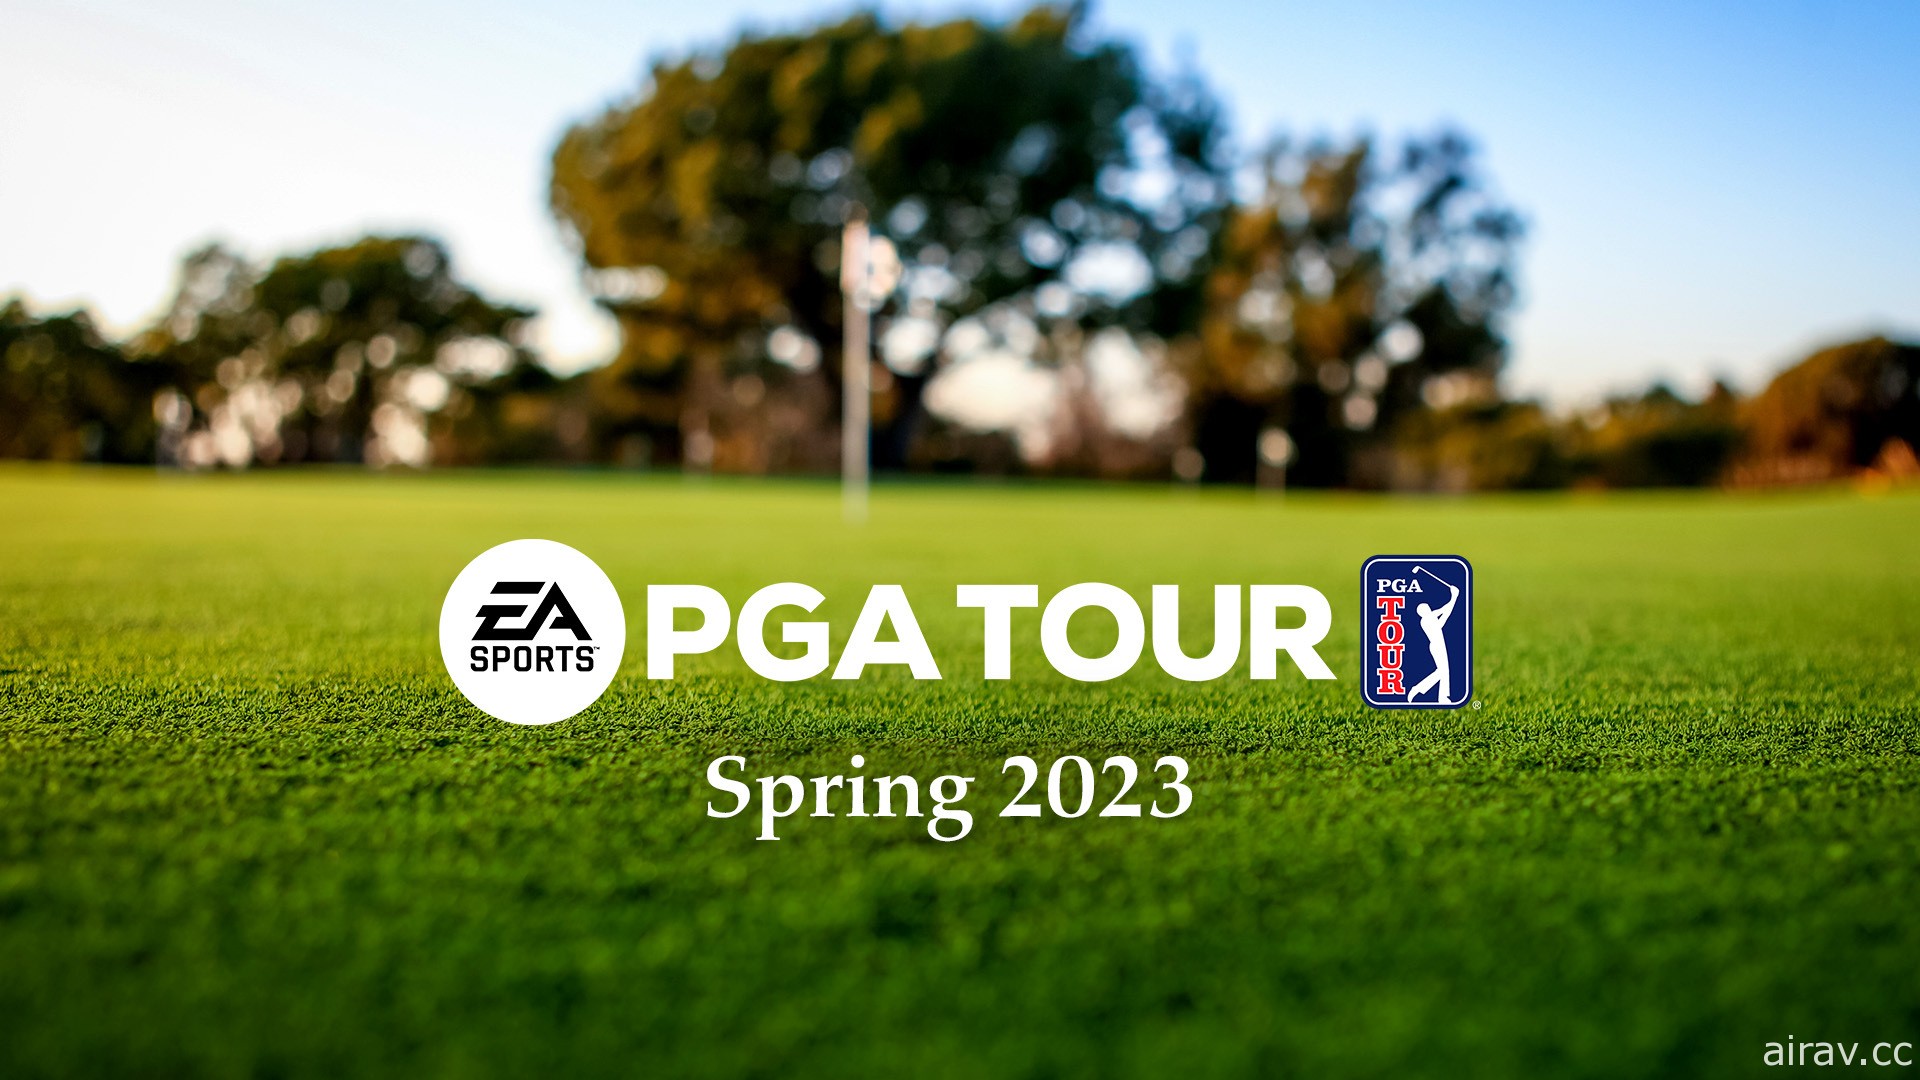 2023 年春季於 EA SPORTS《PGA TOUR》體驗高爾夫冠軍賽樂趣